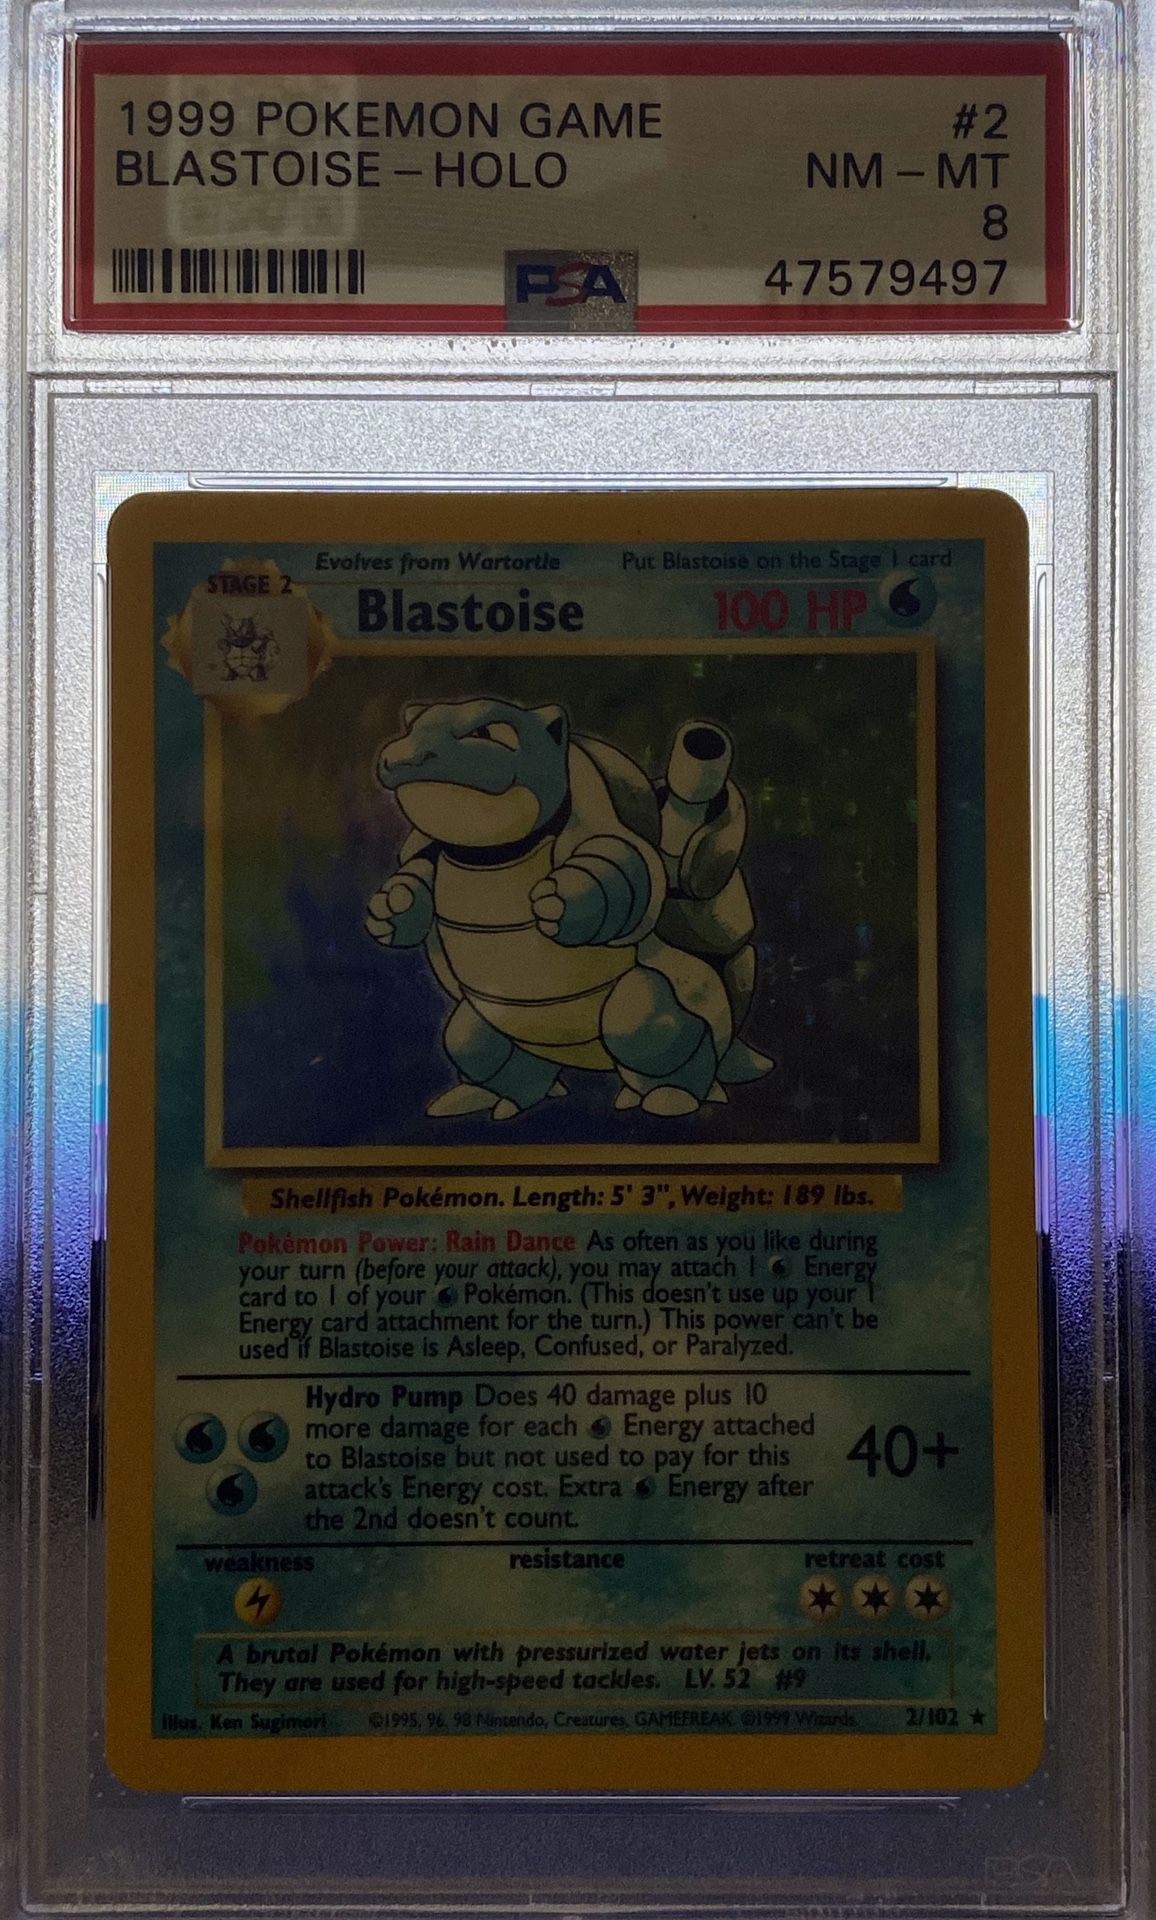 1999 Pokémon Game Blastoise Holo PSA 8